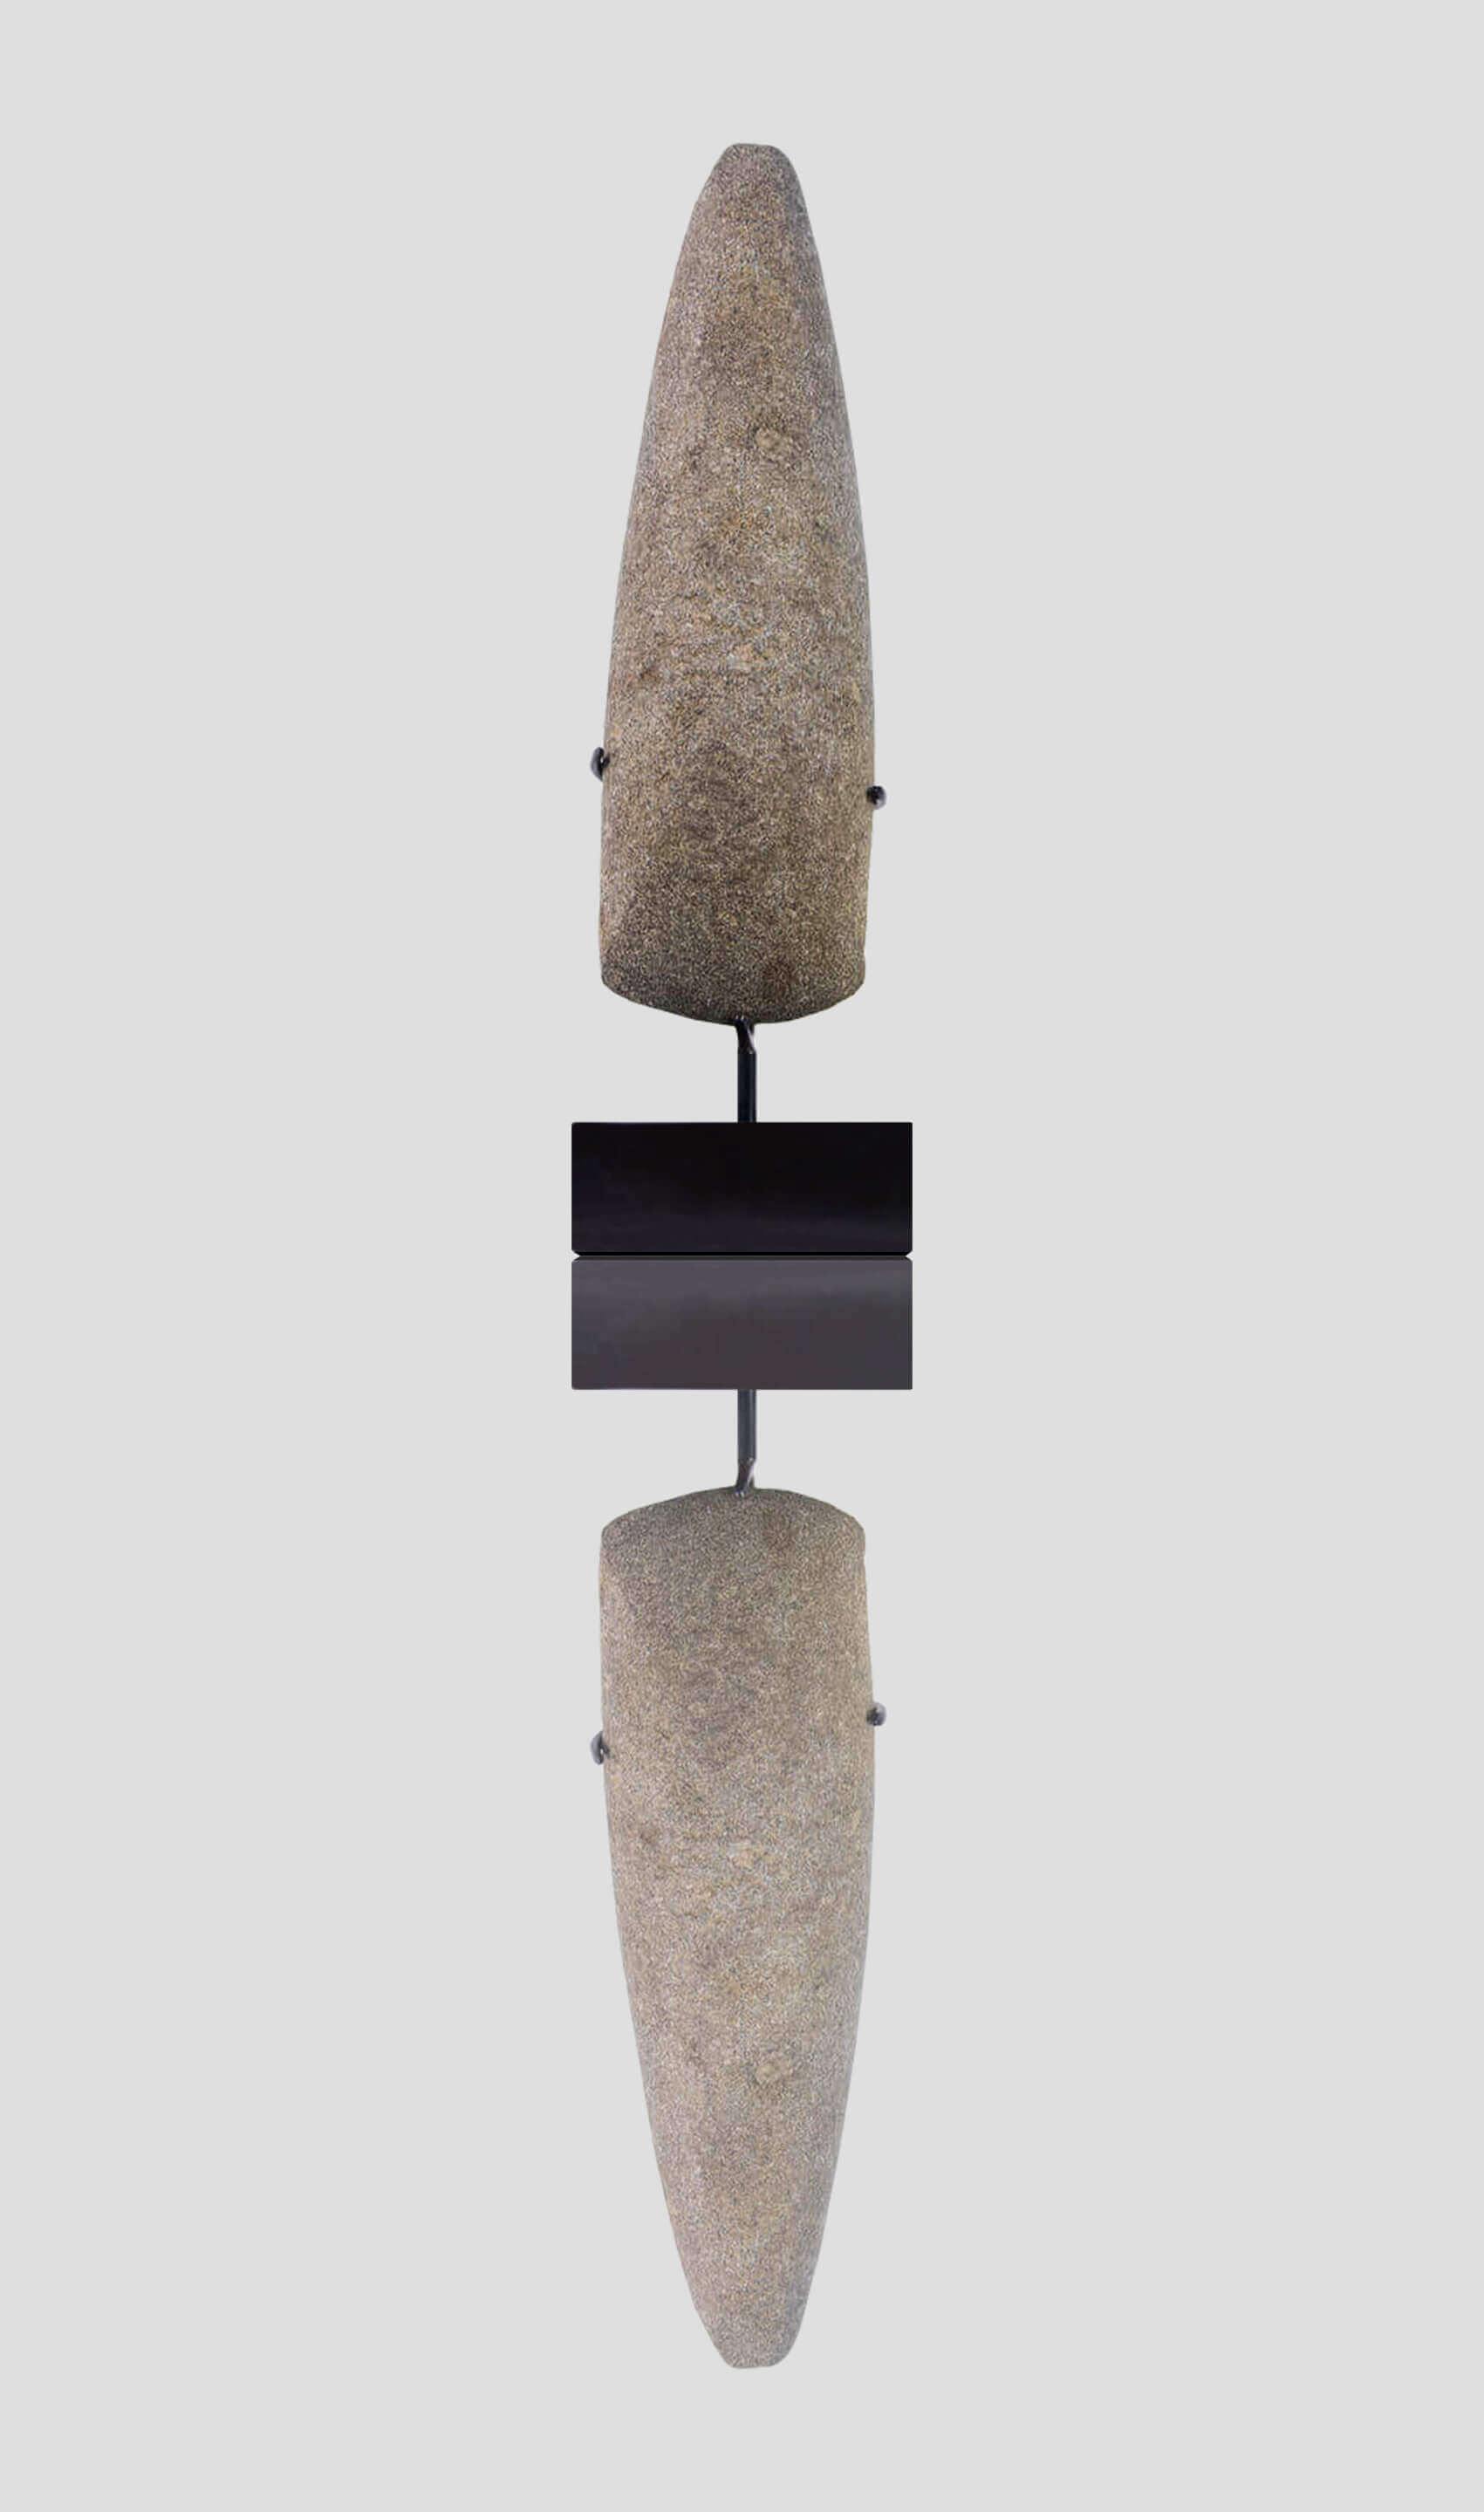 人工制品新石器时代卡普西亚手斧 [8,500 BC] 261 毫米